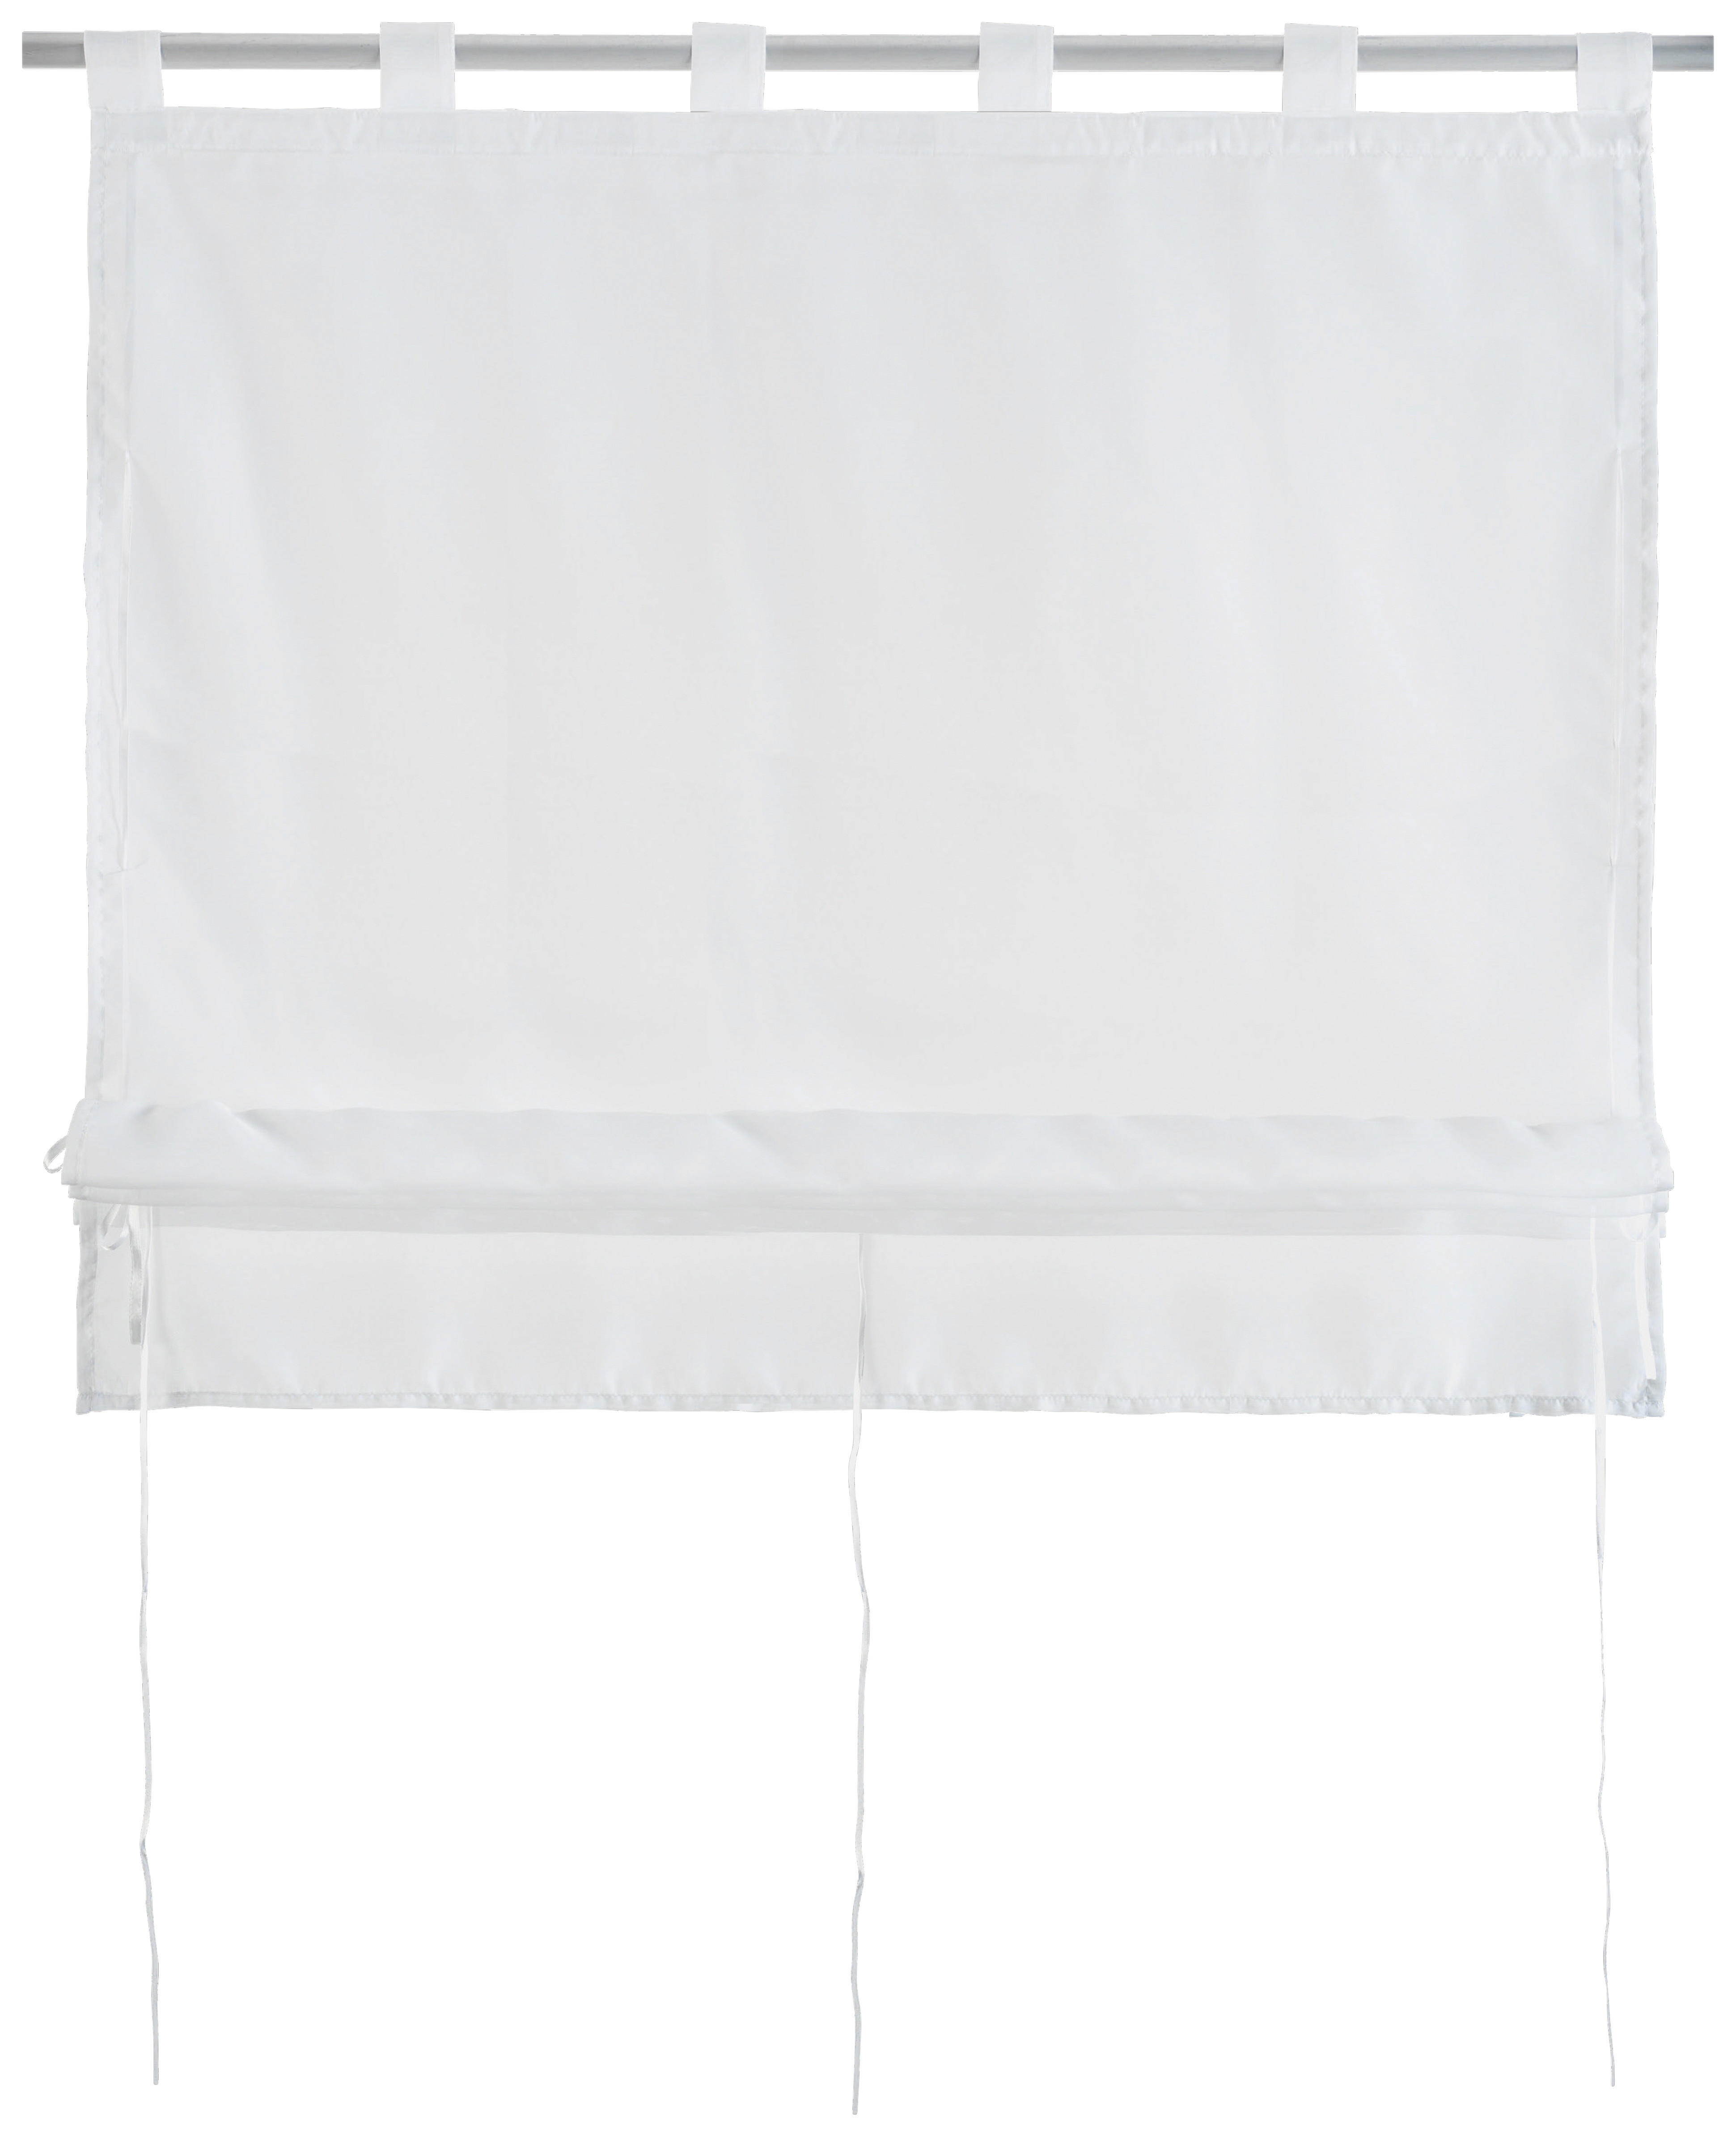 Bändchenrollo Nouveau weiß B/L: ca. 100x140 cm Nouveau - weiß (100,00/140,00cm)